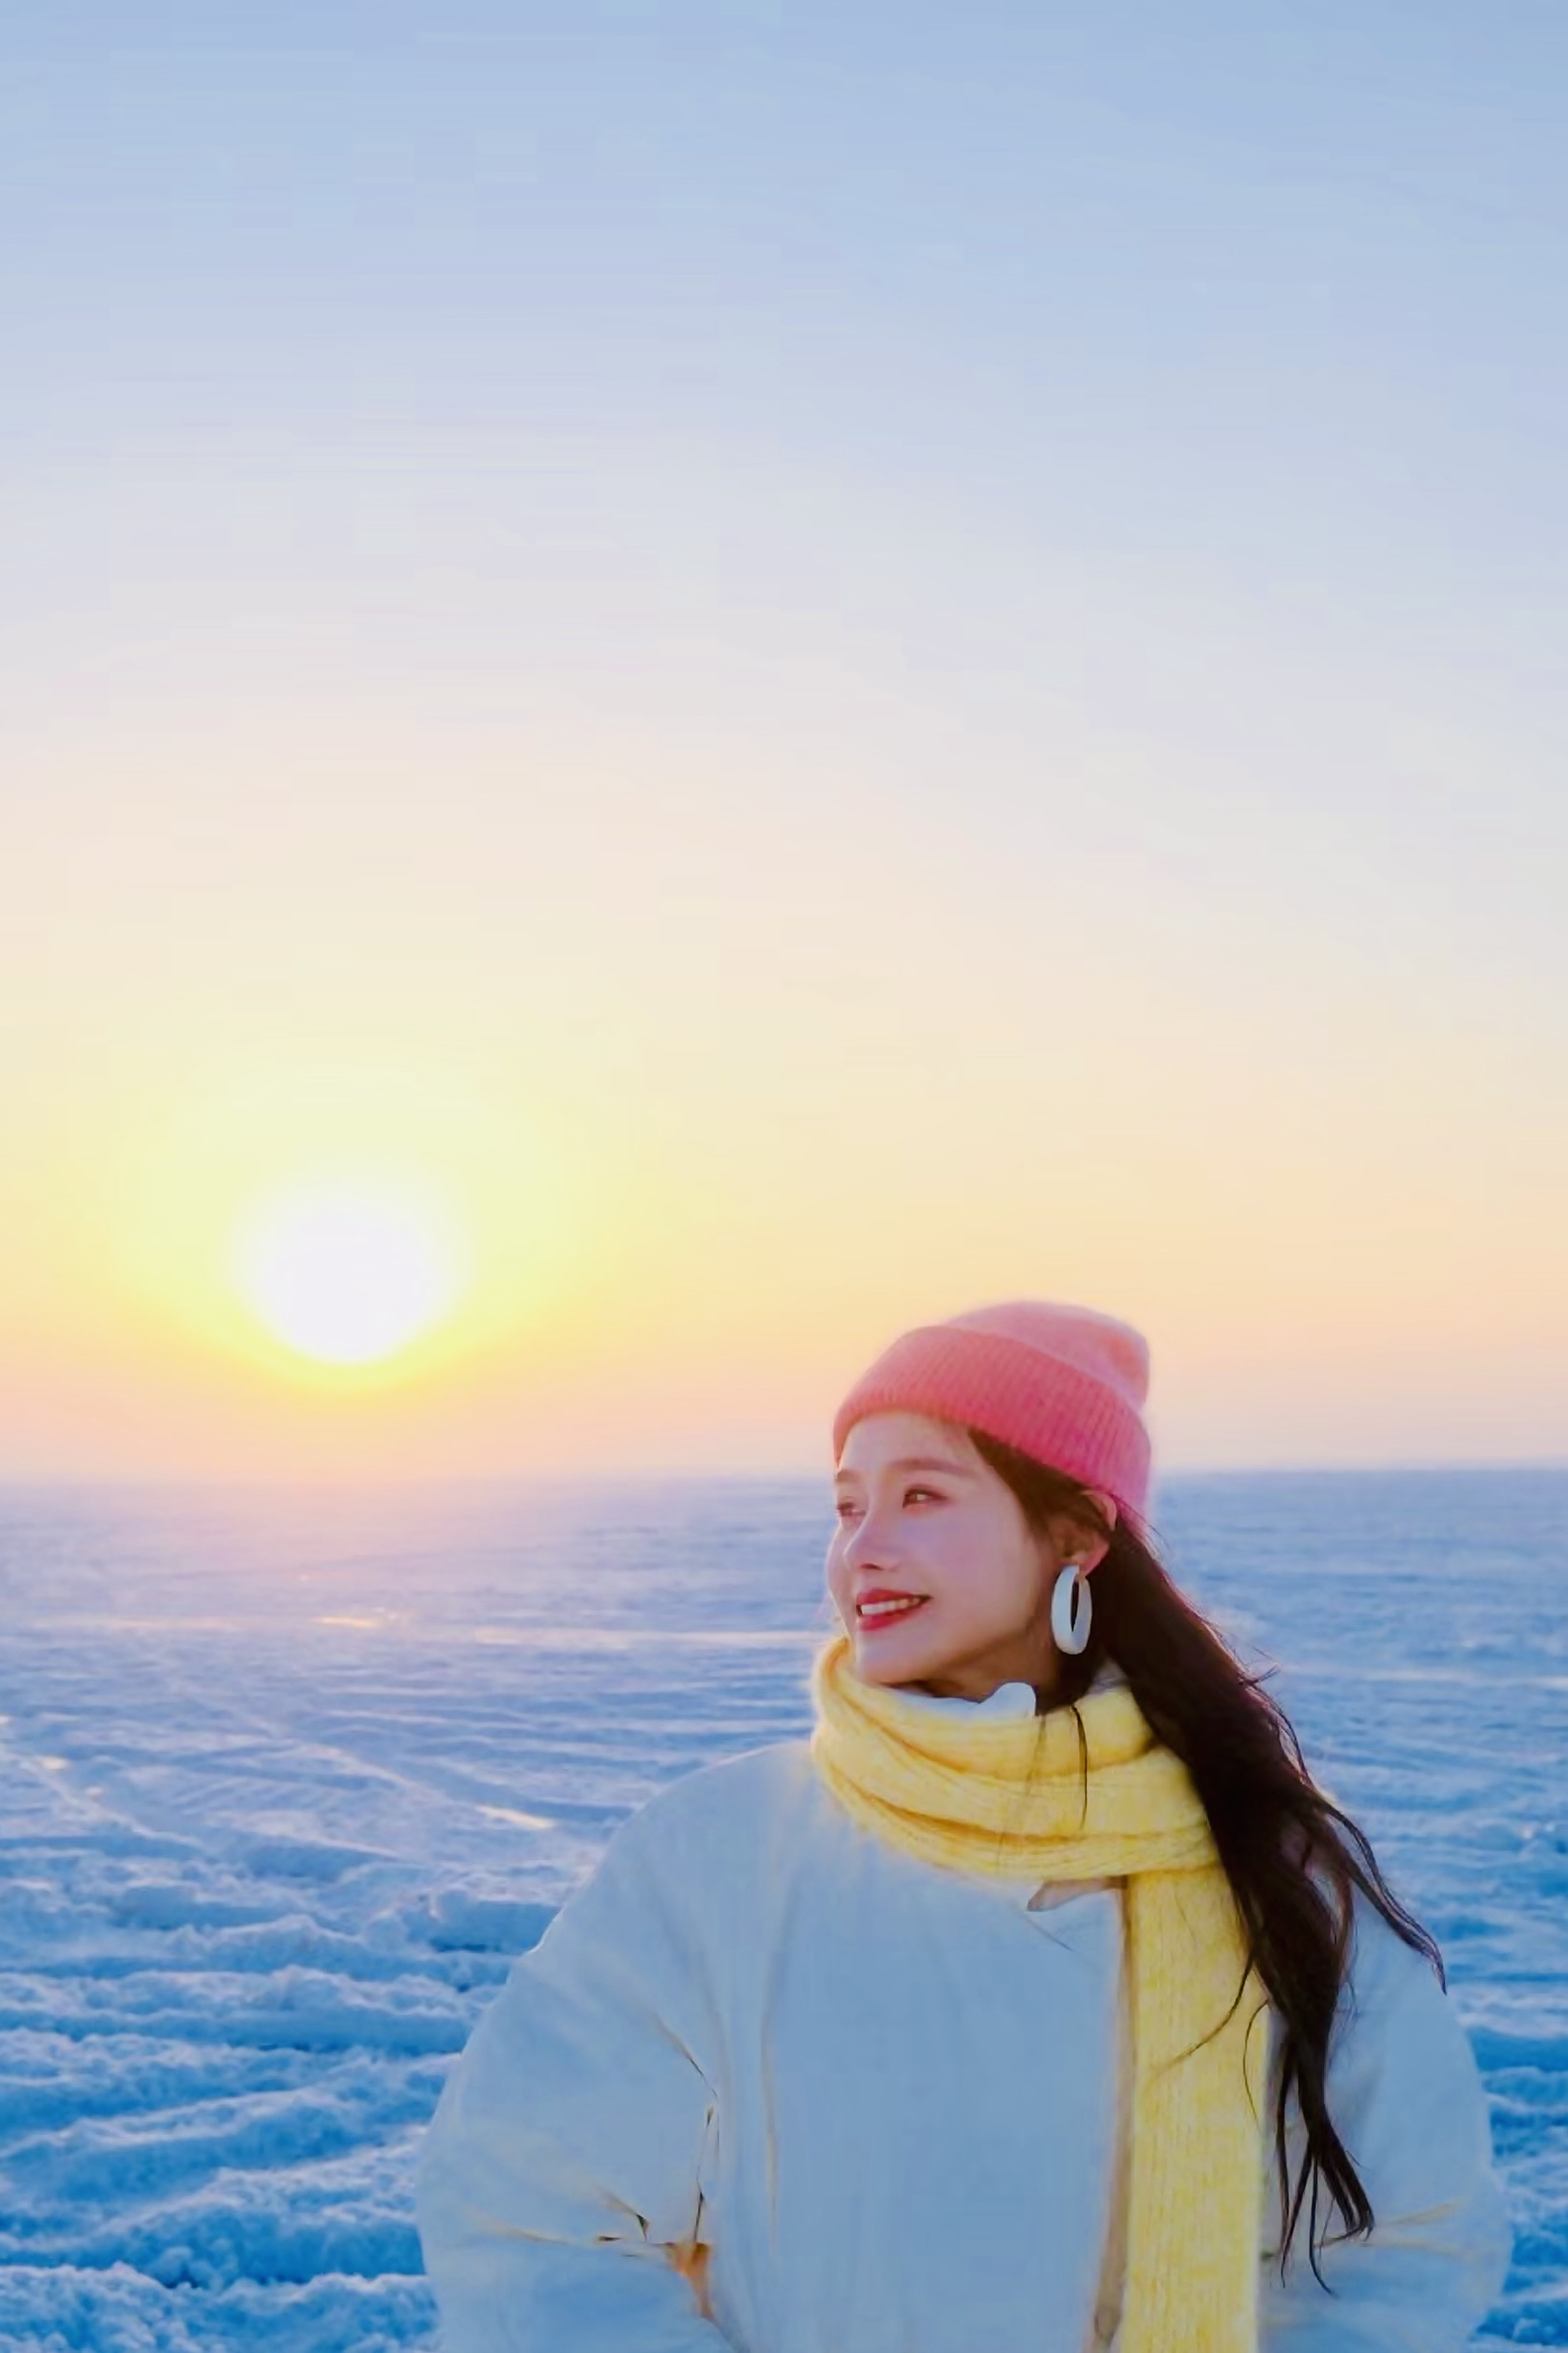 去呼市哈素海看一场冰雪❄️世界里的日落🌄吧!